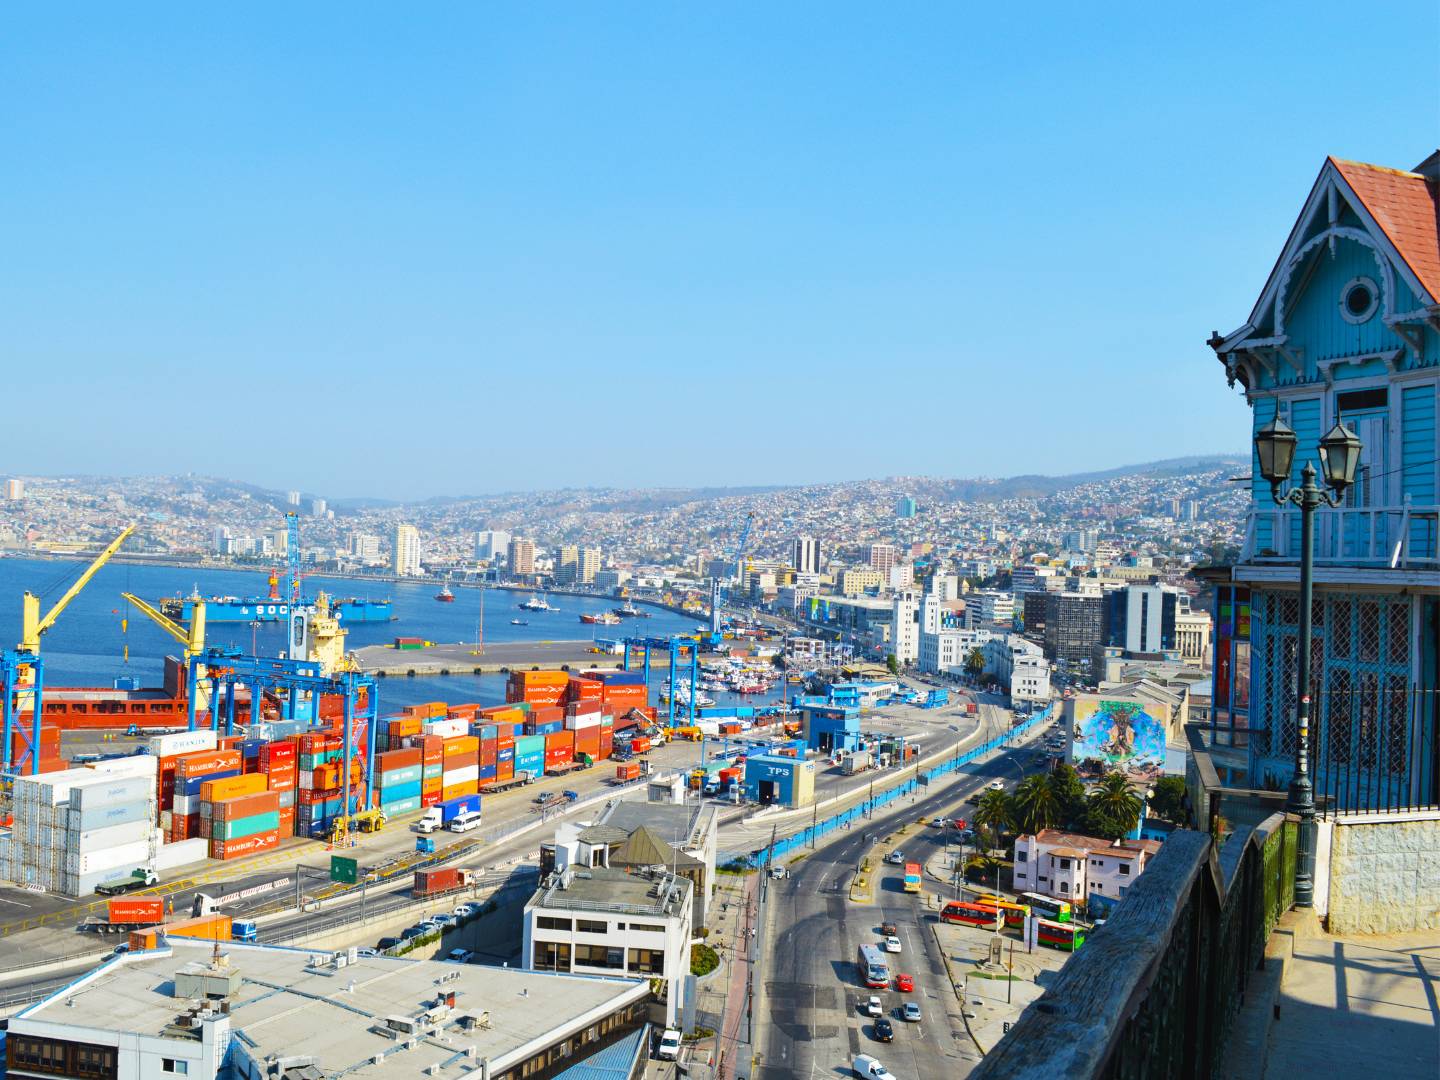 Santiago - Valparaíso - Viña del Mar - Santiago